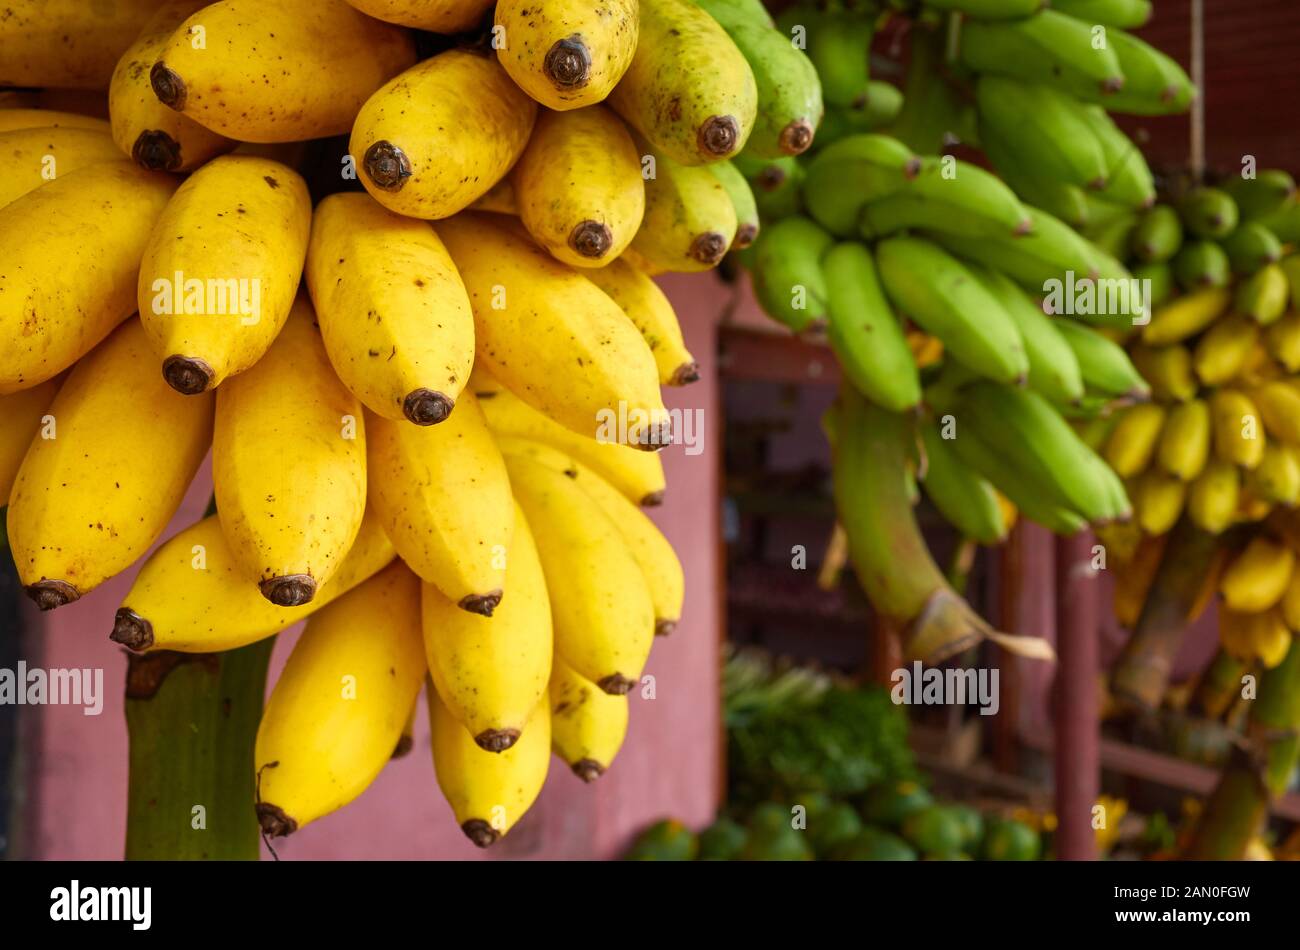 Ripe bananas on a local market, Sri Lanka. Stock Photo